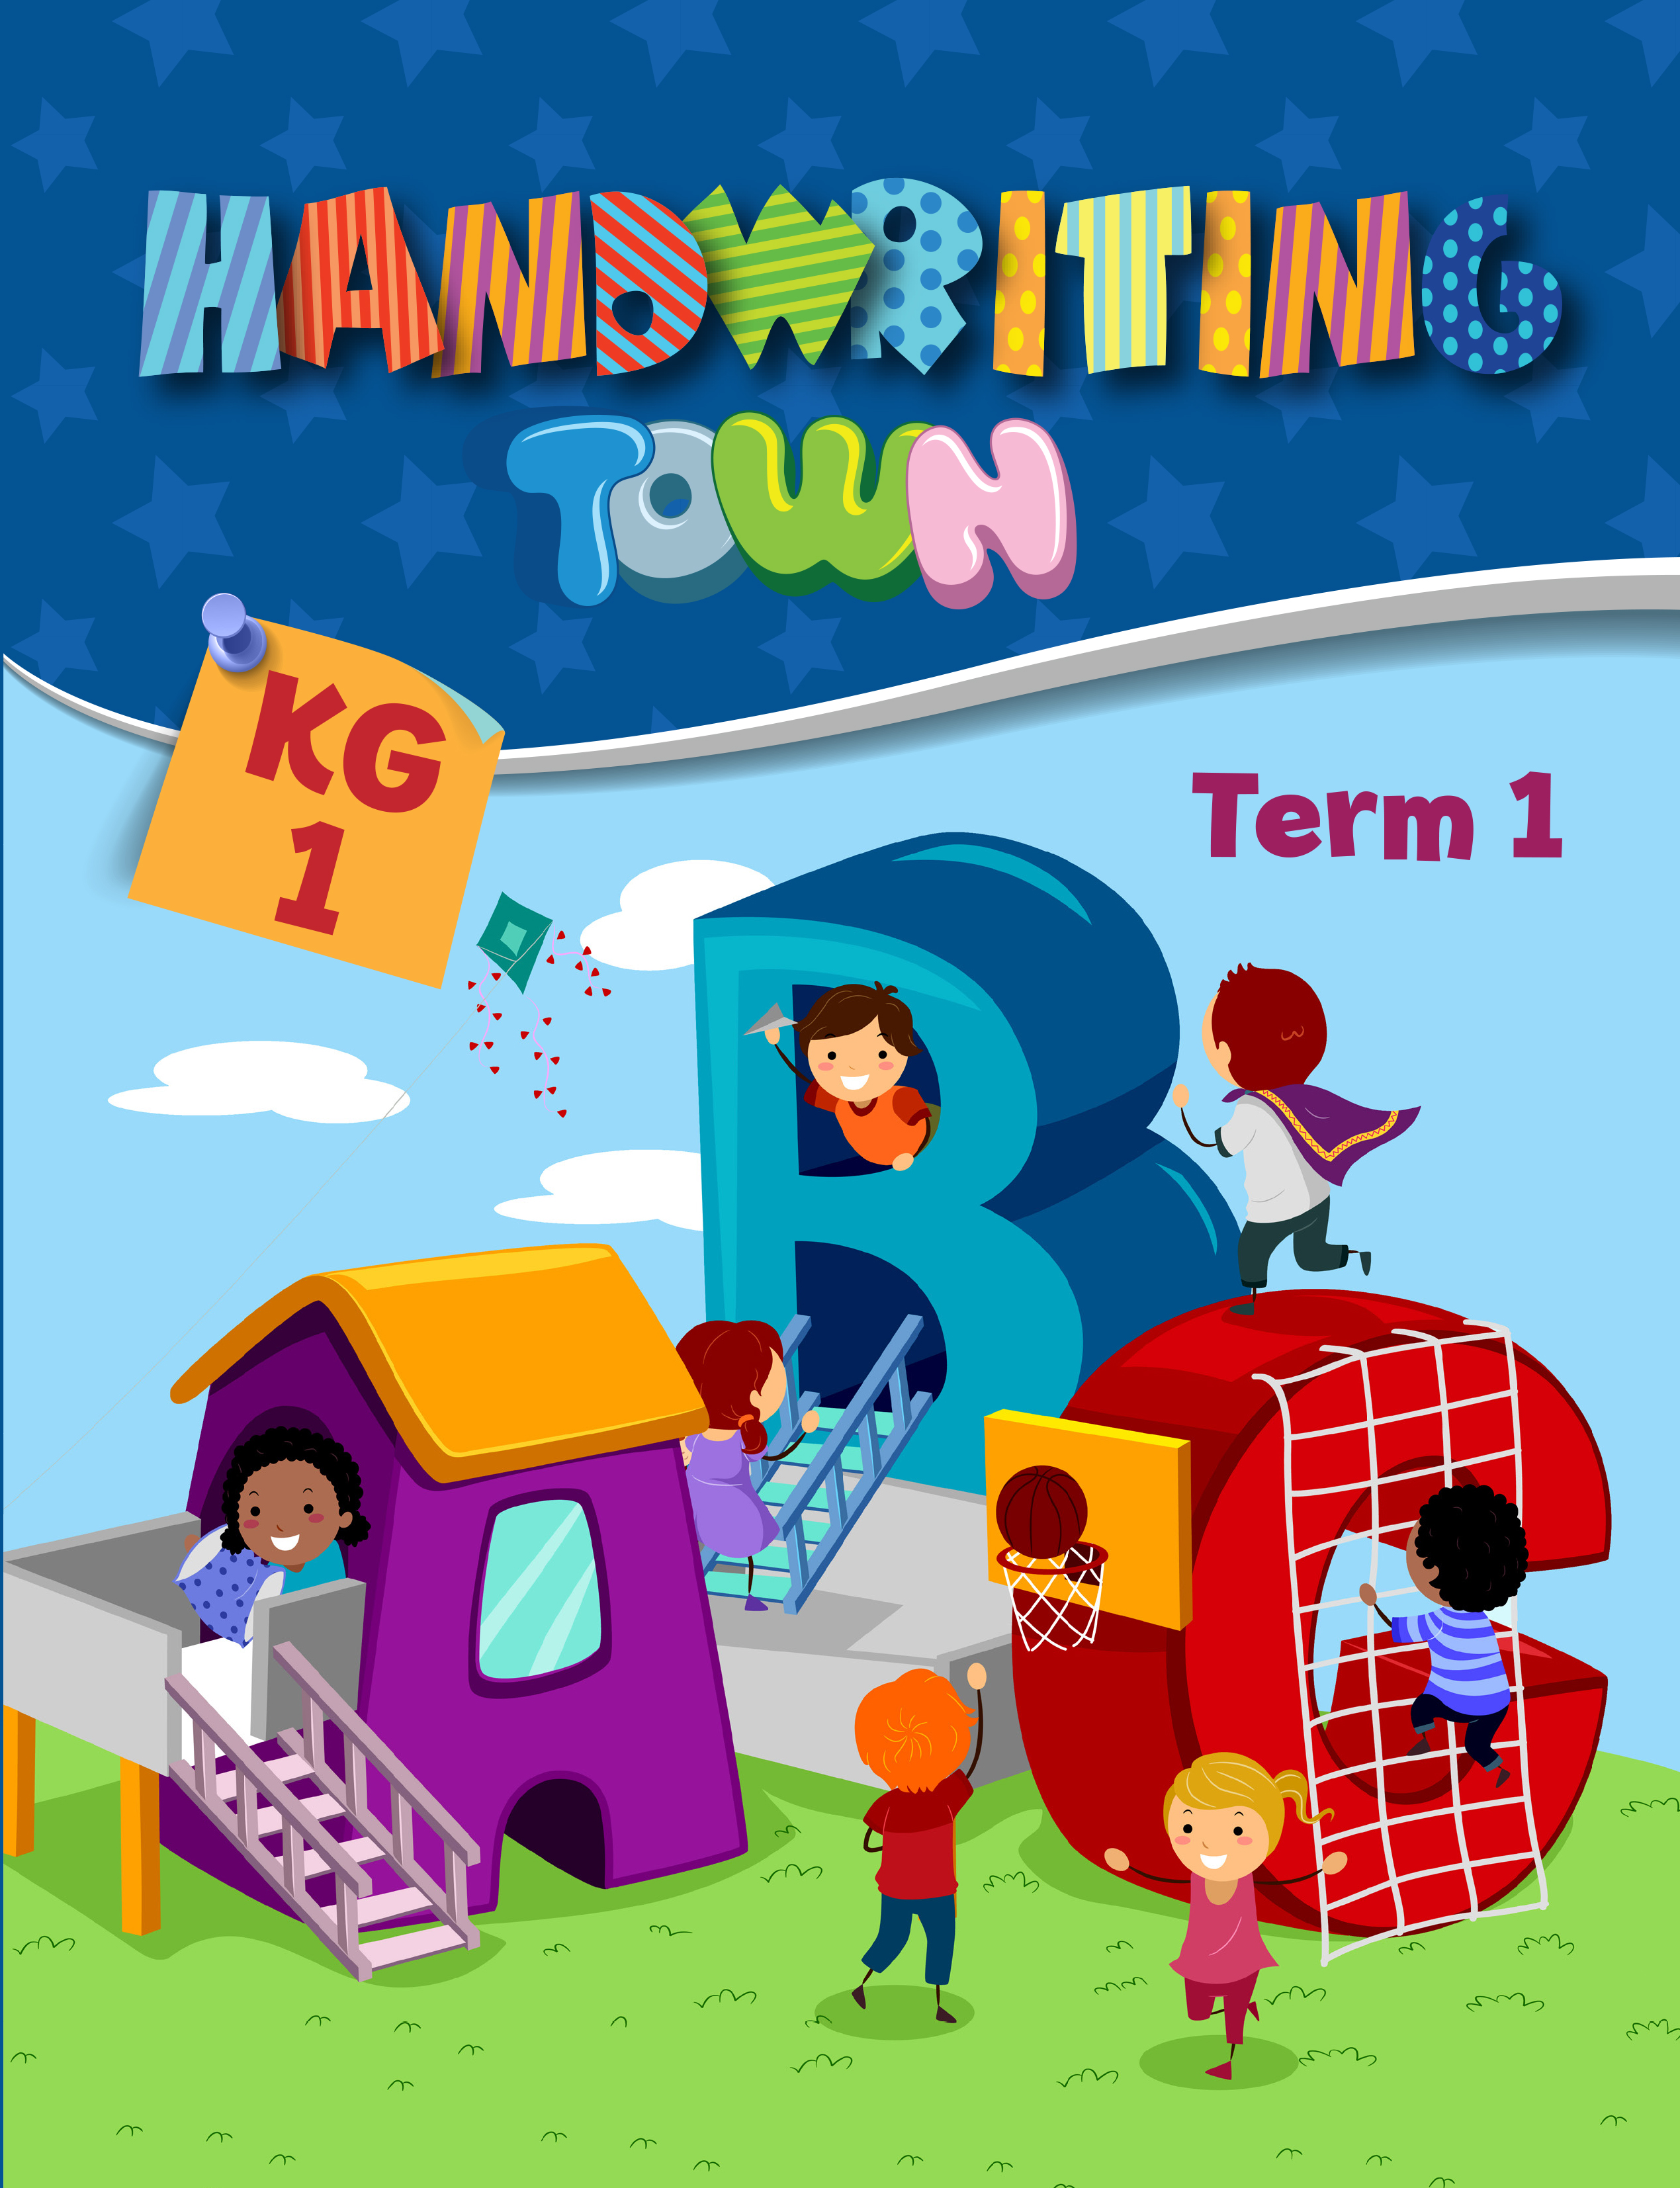 Handwriting Town KG1 Term 1